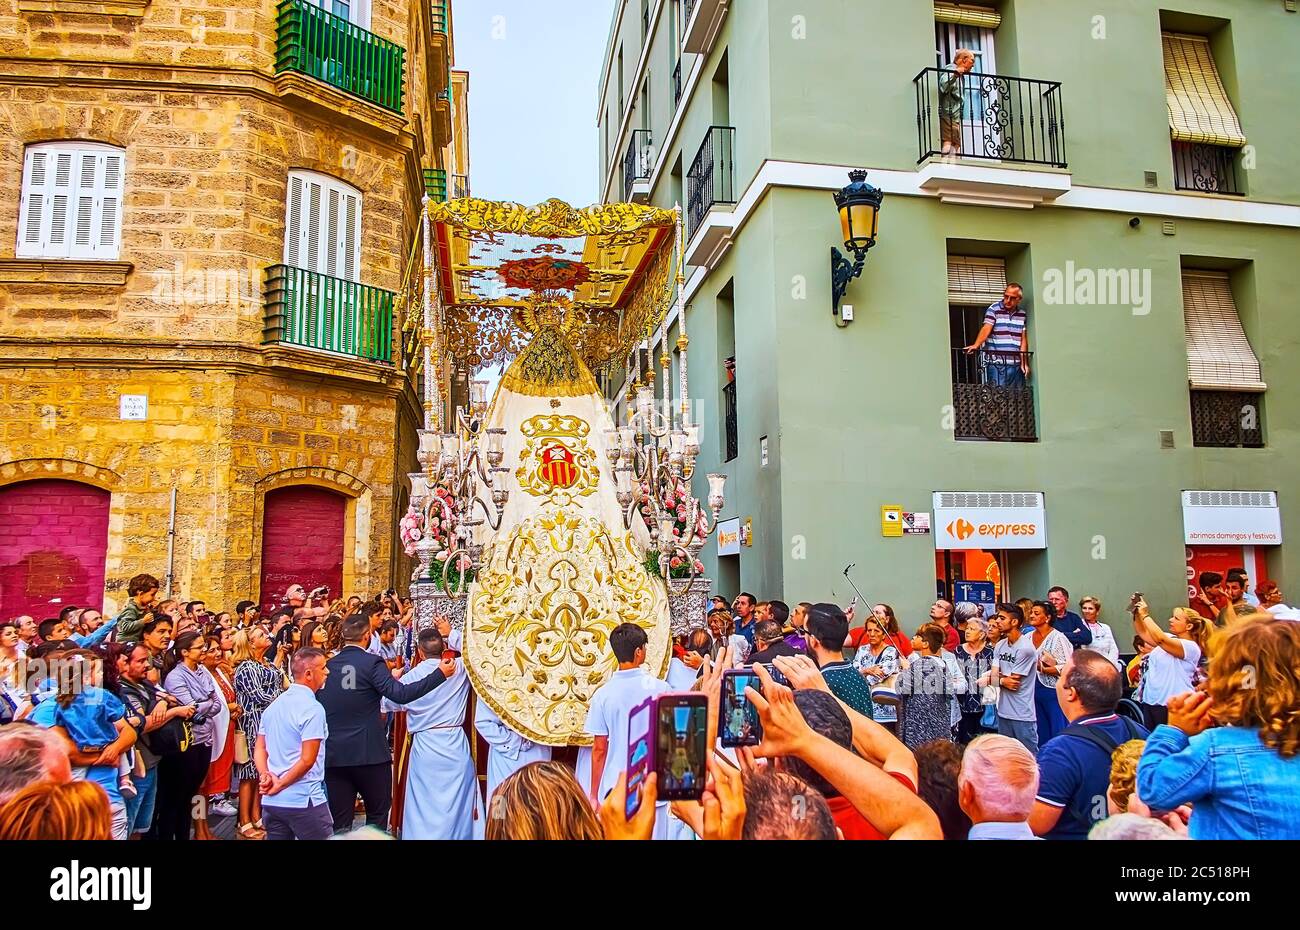 CÁDIZ, ESPAÑA - 22 DE SEPTIEMBRE de 2019: La multitud de personas observa la procesión religiosa debido a la Fiesta de Mercedes (Festival de nuestra Señora de la Misericordia), el mes de septiembre Foto de stock